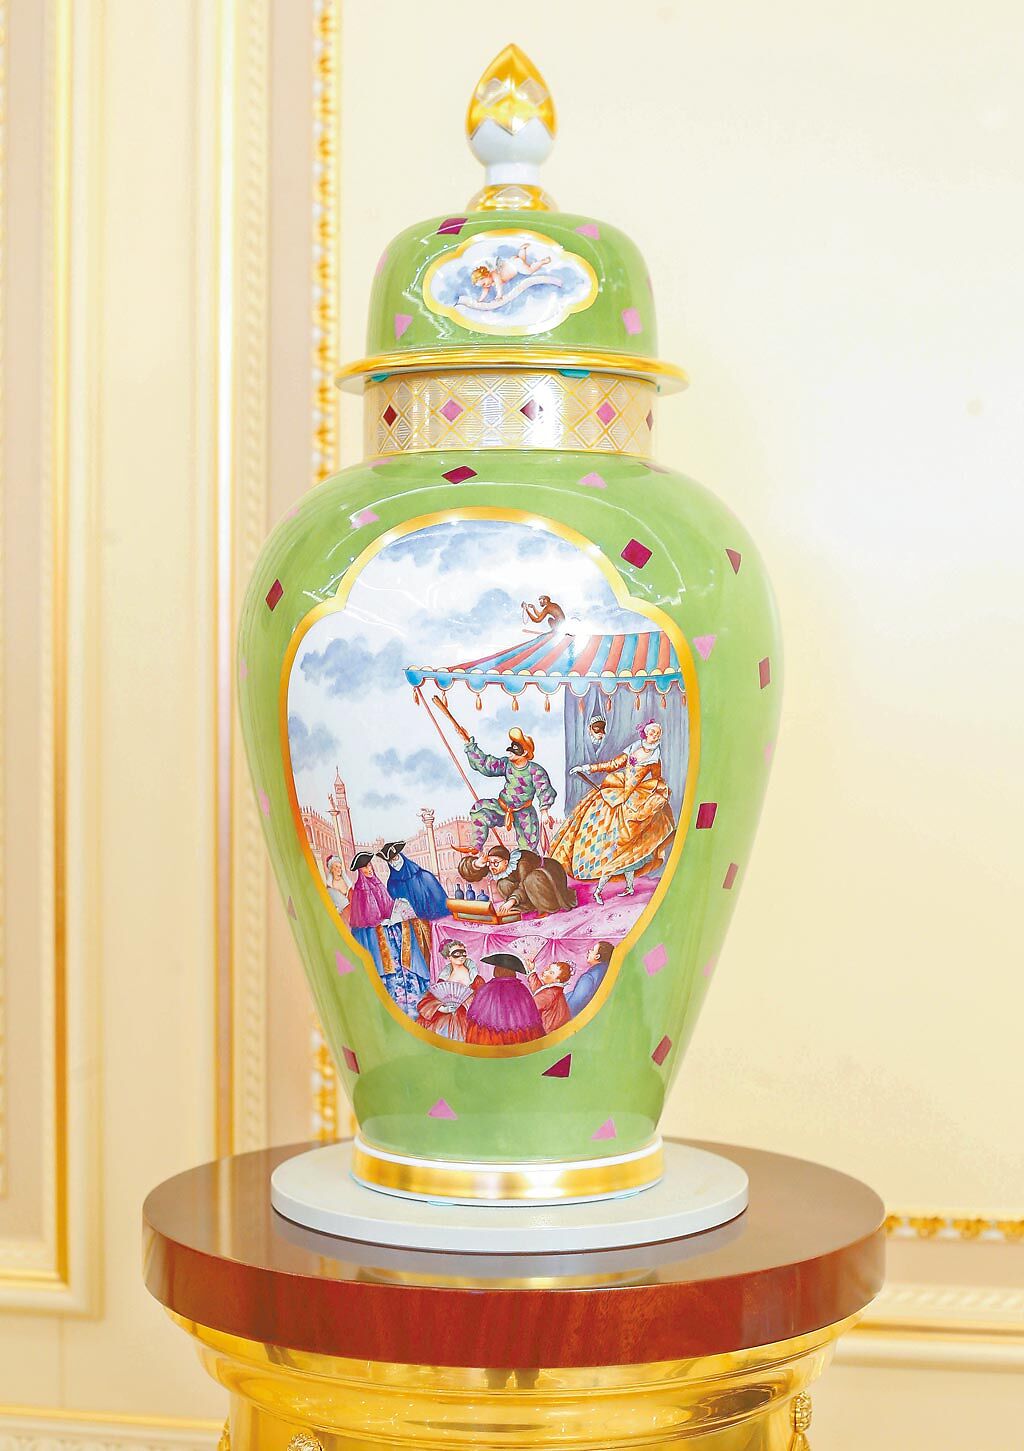 《戲看人生》花瓶是畫家雅克‧楊克以寫實手法呈現18世紀歐洲貴族盛會，因為是真實紀錄而別具文化底蘊。（國裕精品提供）